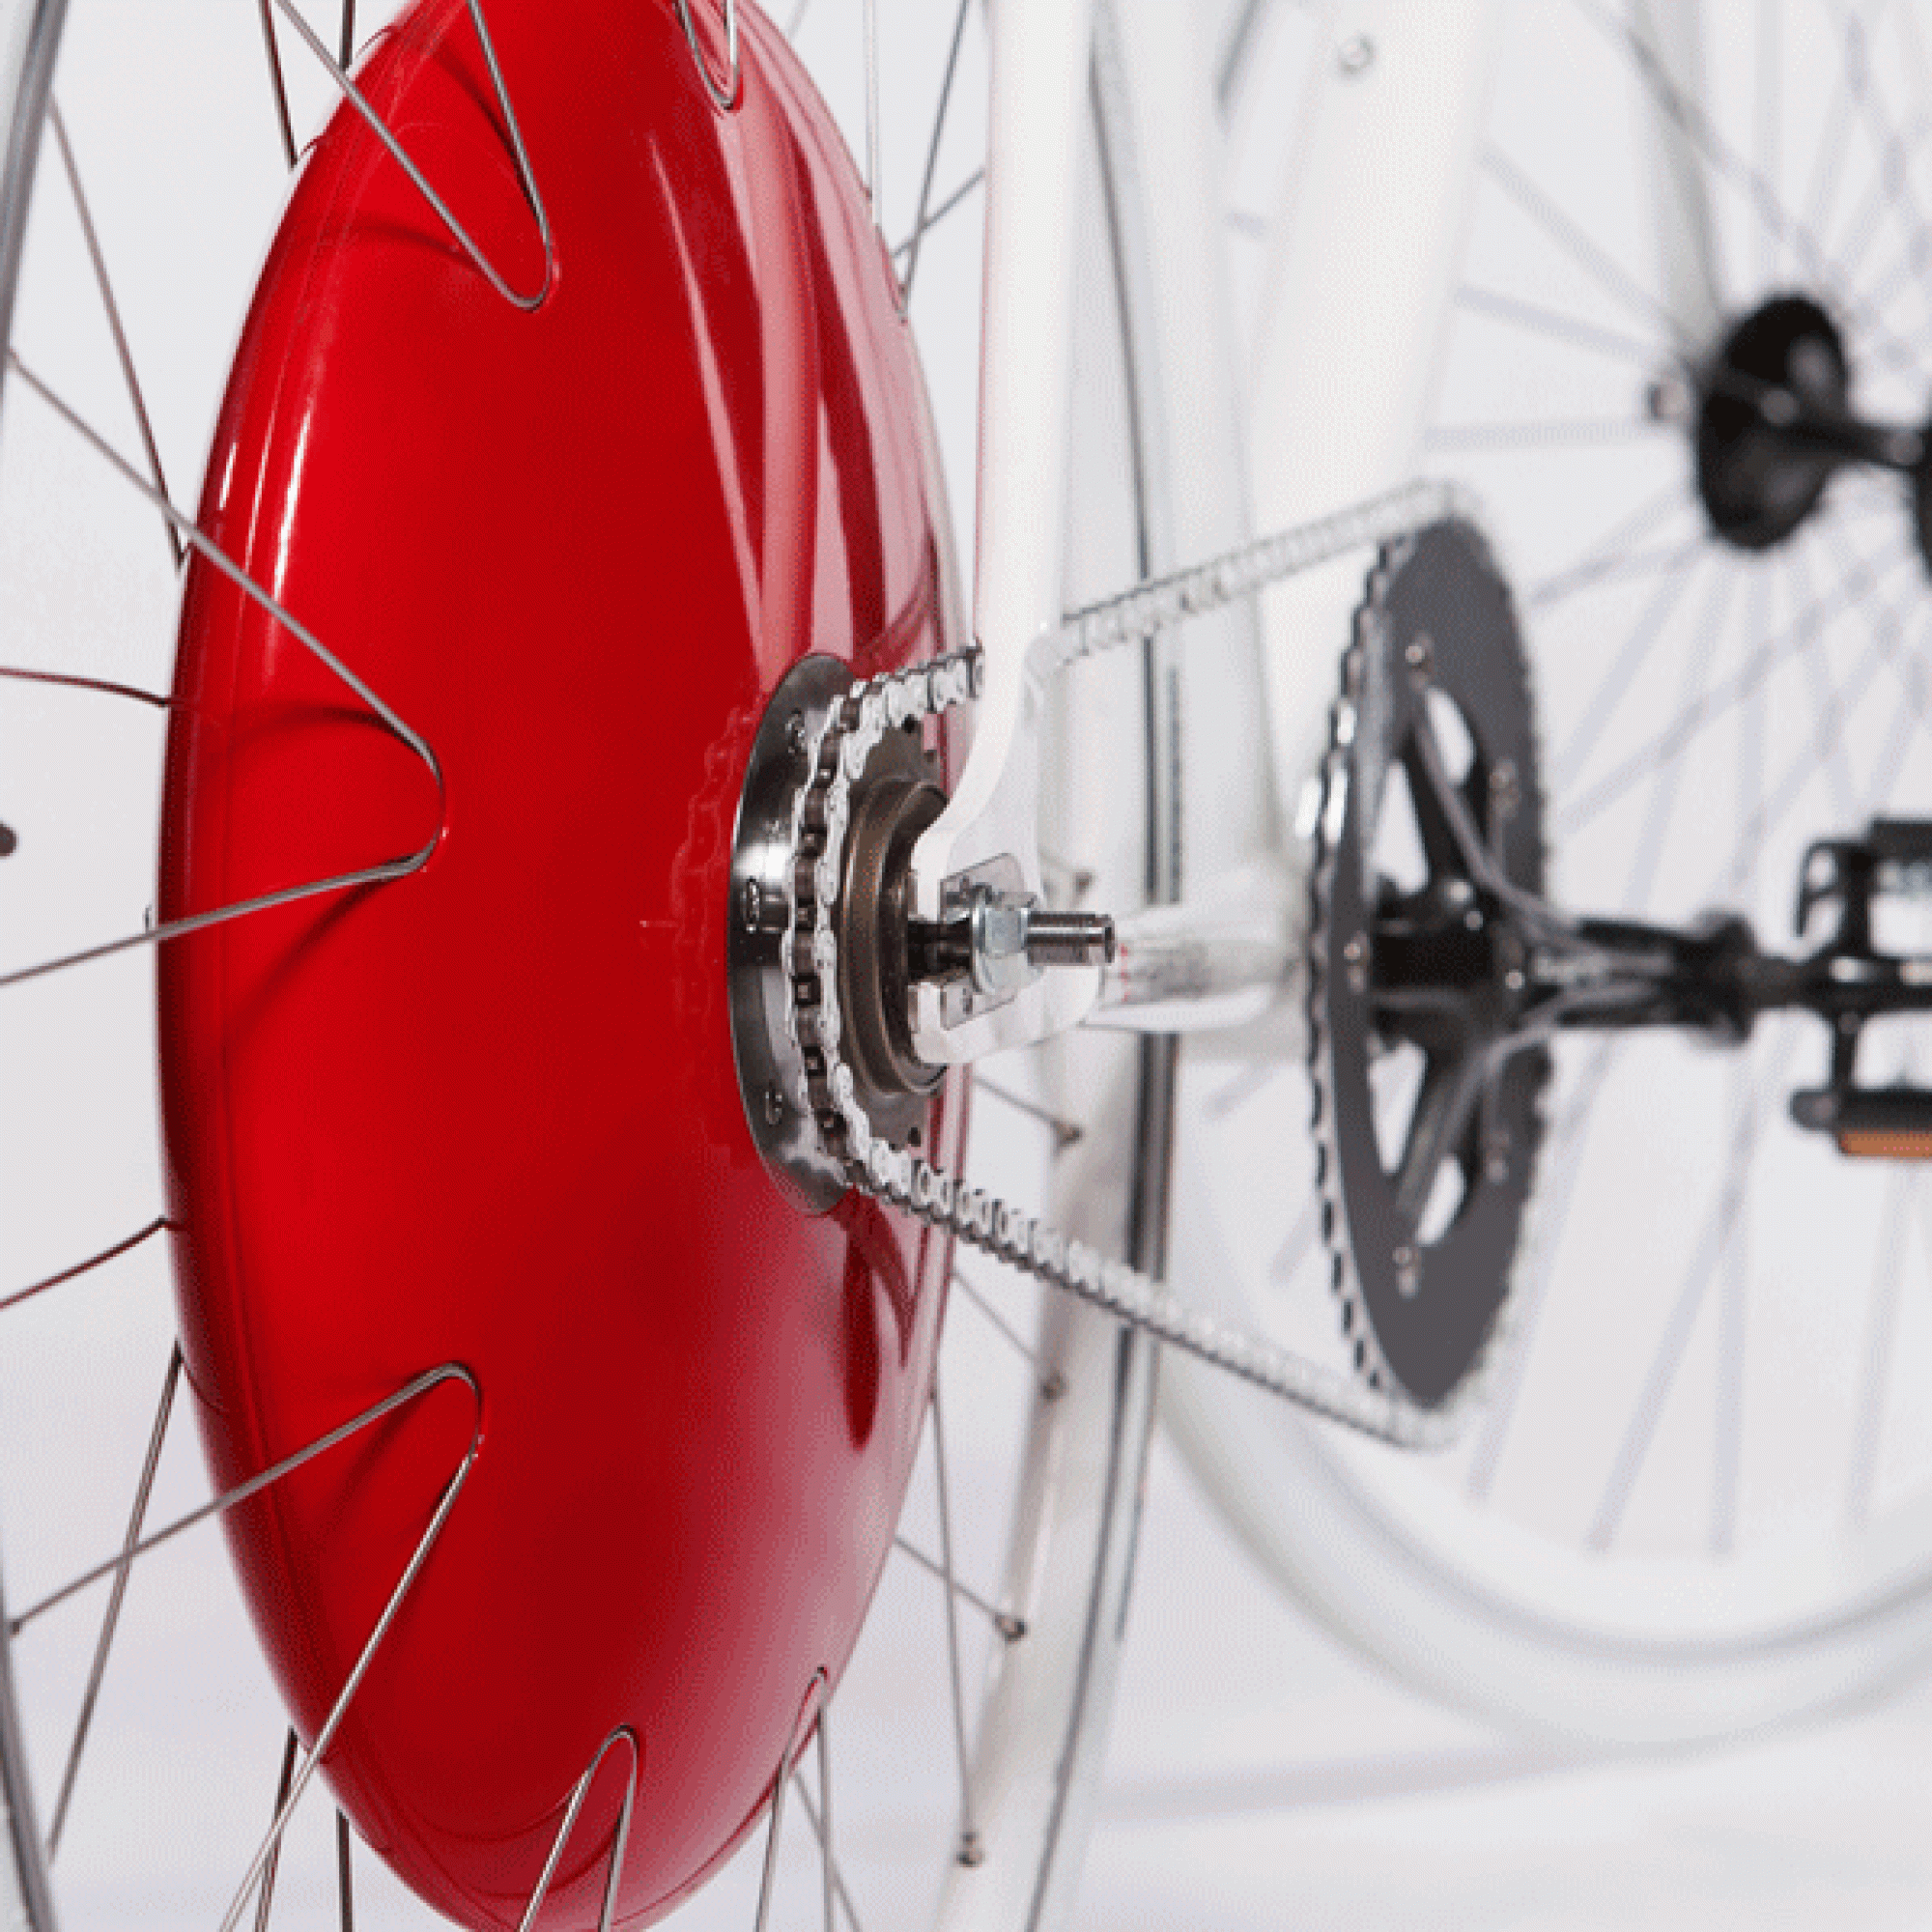 Weder E-Bike noch Citybike, sondern Smart Wheel. Will man sein konventionelles Rad zu einem E-Bike umrüsten, ersetzt man das Hinterrad durch das rote Copenhagen Wheel und die eigene Tretleistung wird erhöht.